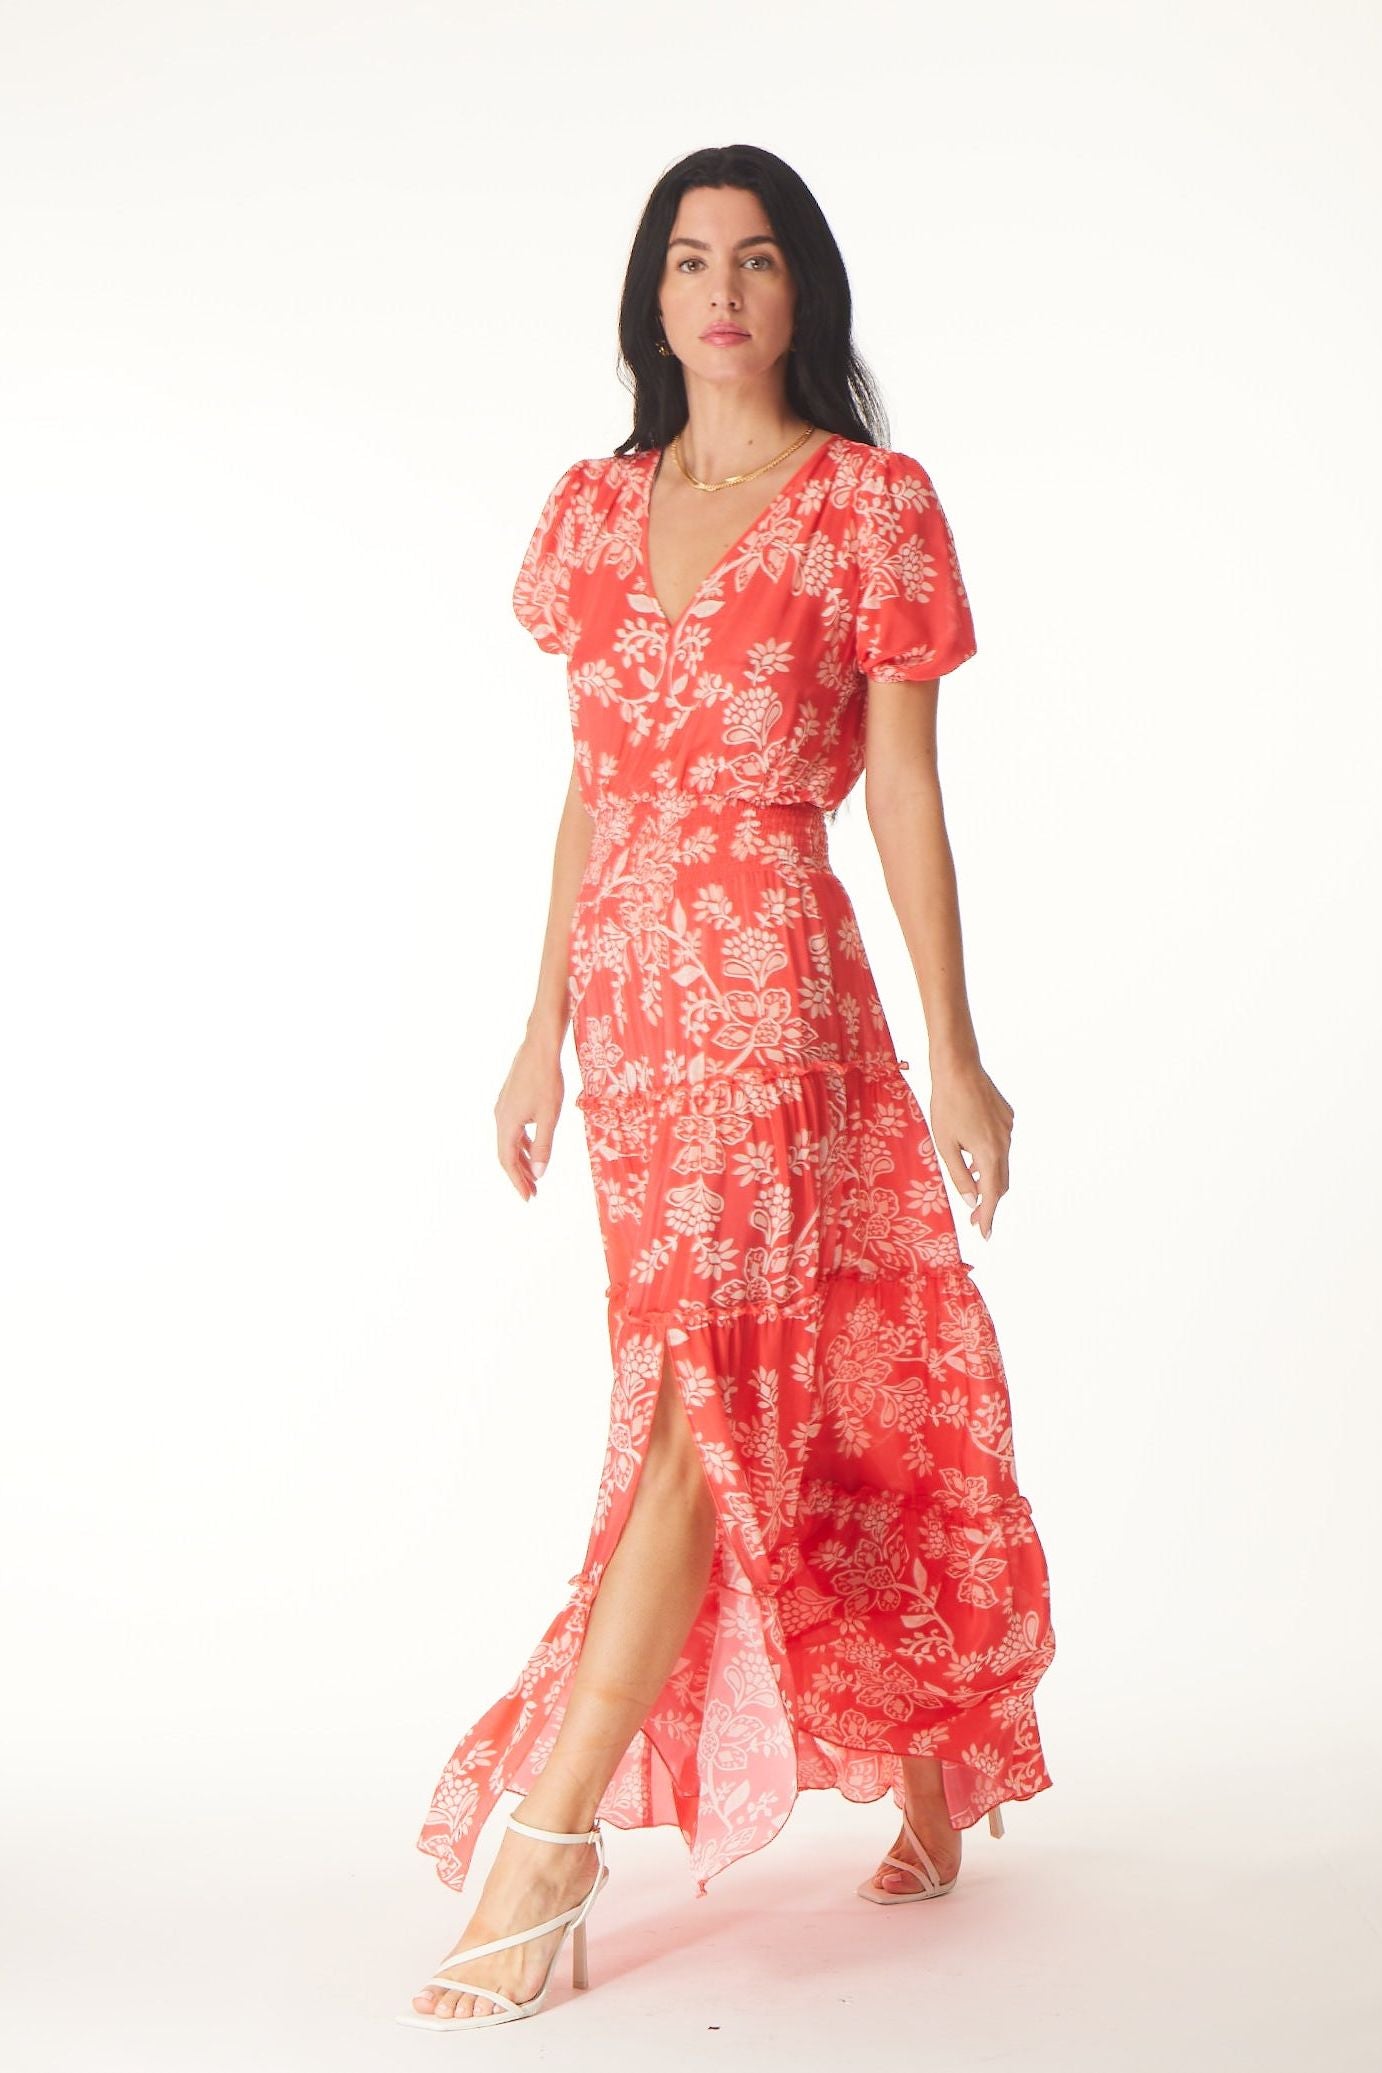 Gilner Farrar - Dariya Dress in Coral Batik Print